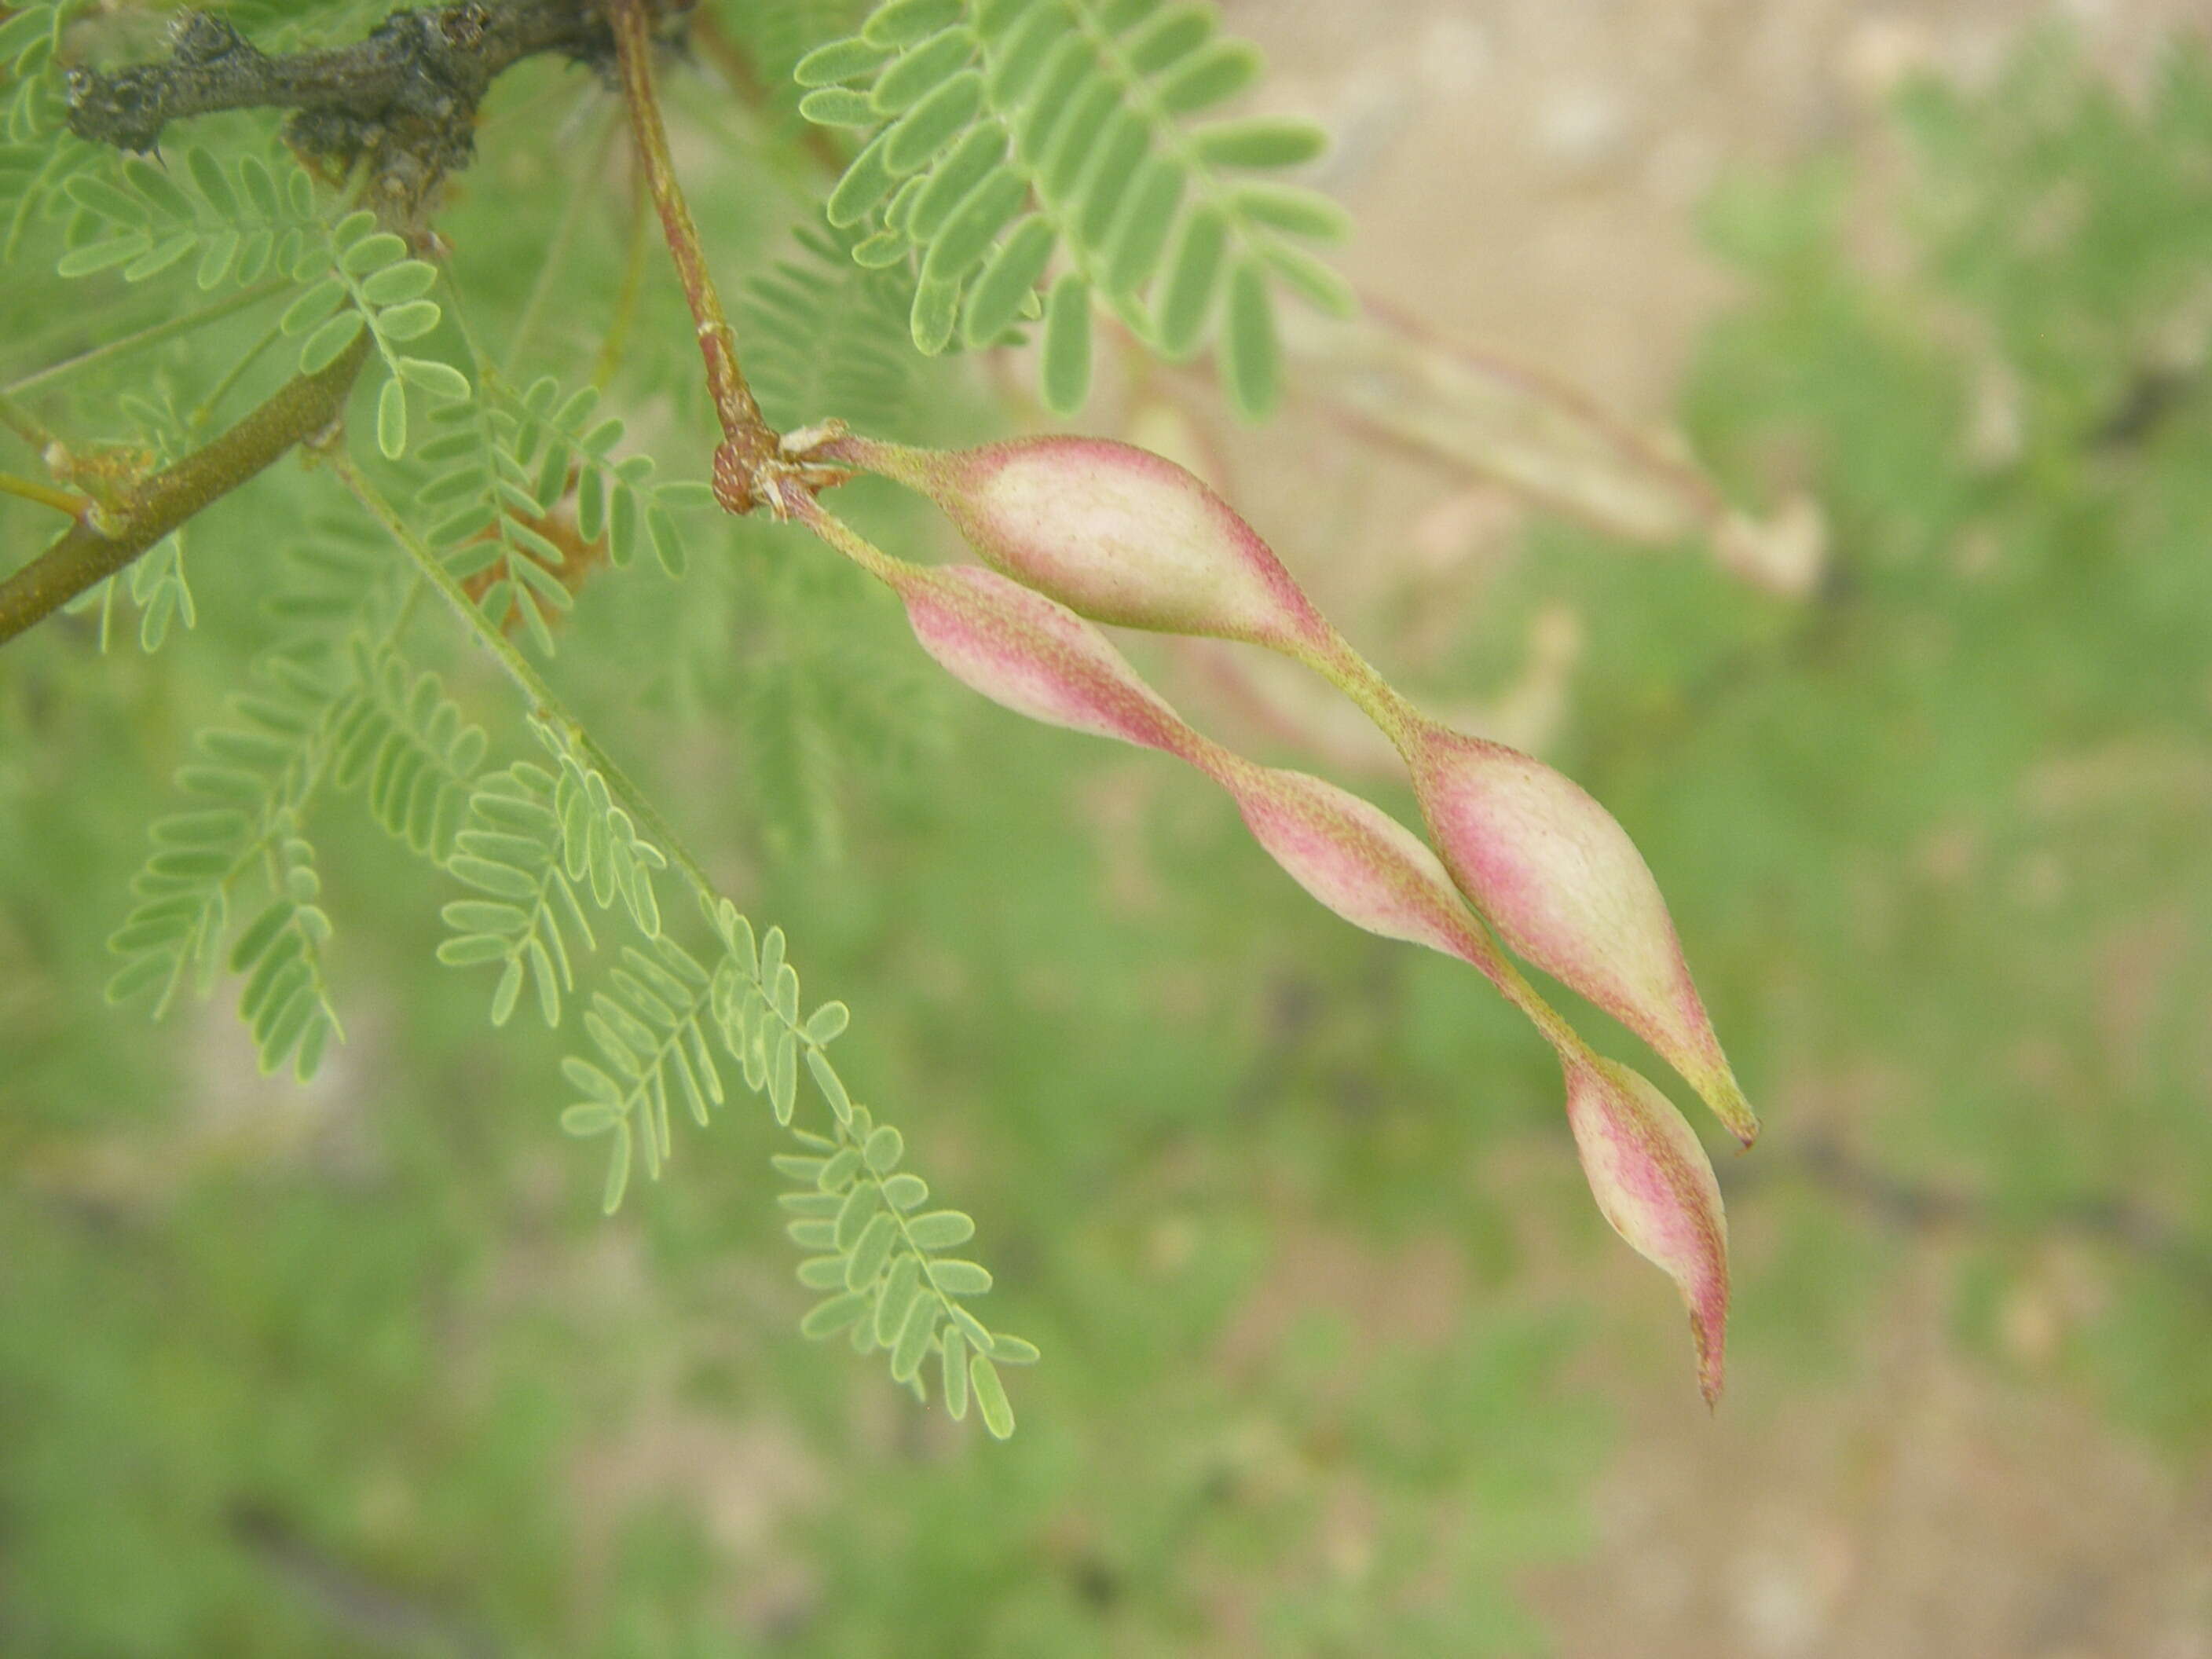 Image of whitethorn acacia